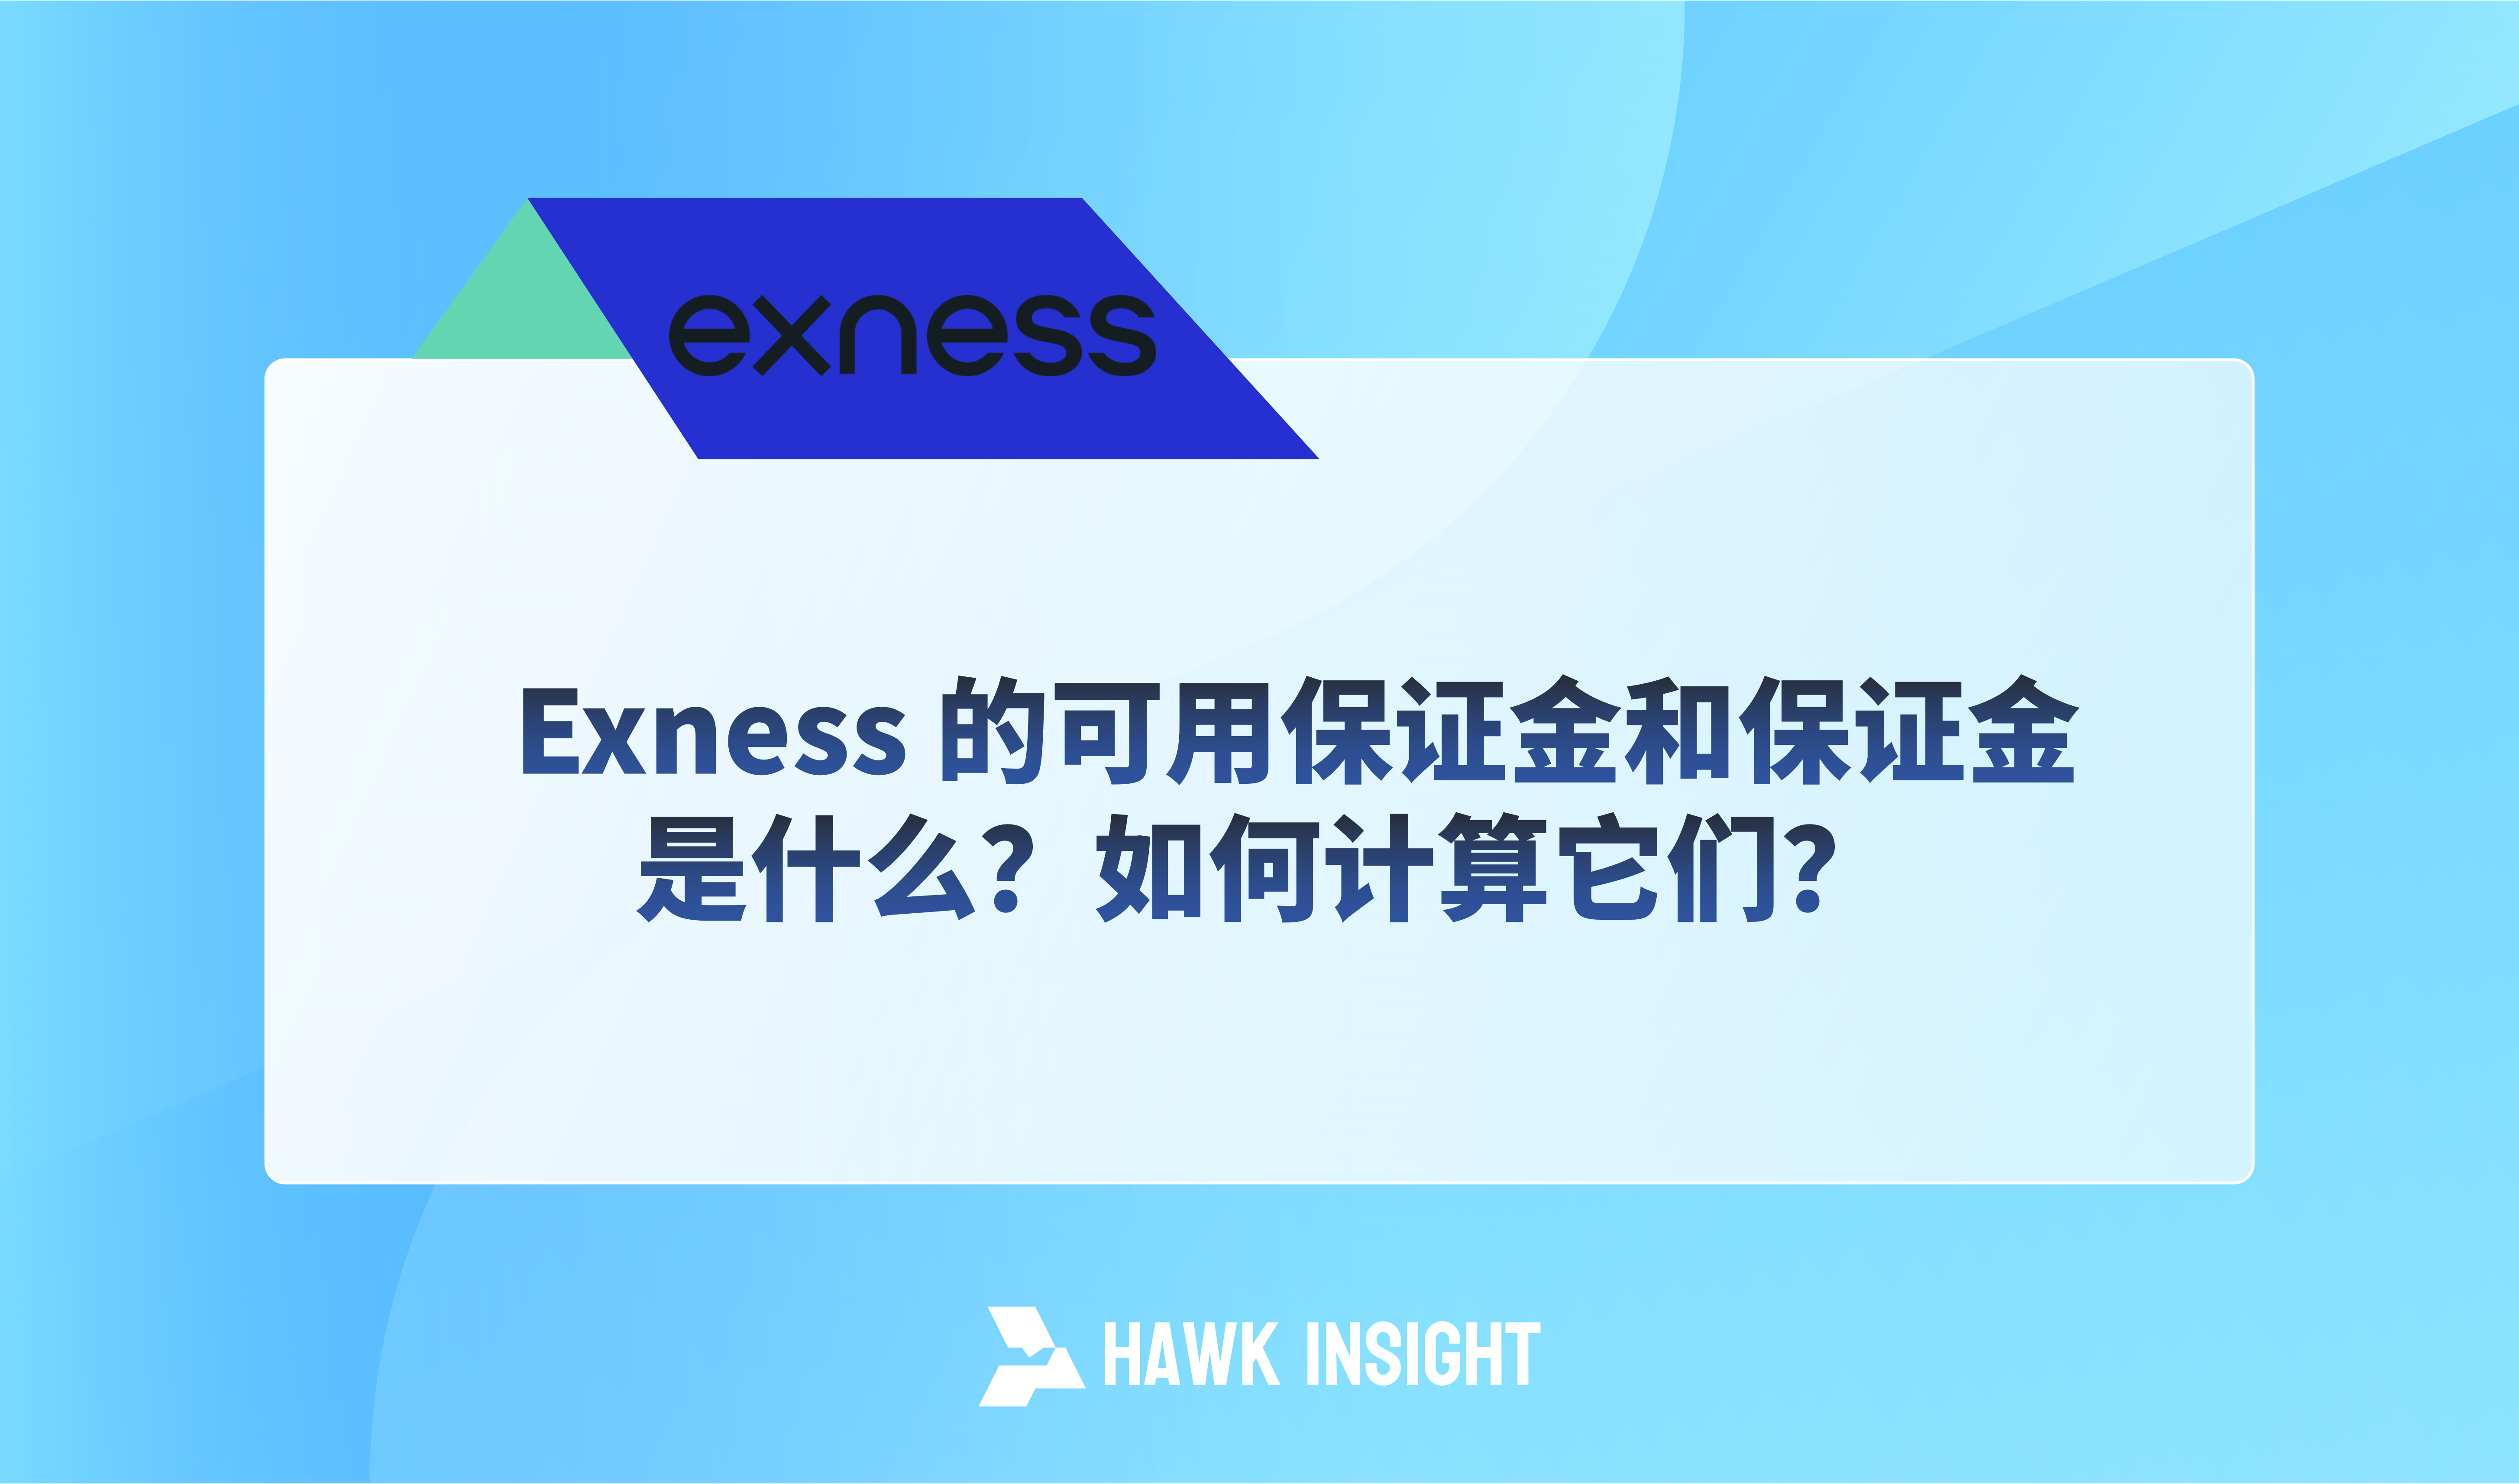 Exness 的可用保证金和保证金是什么？